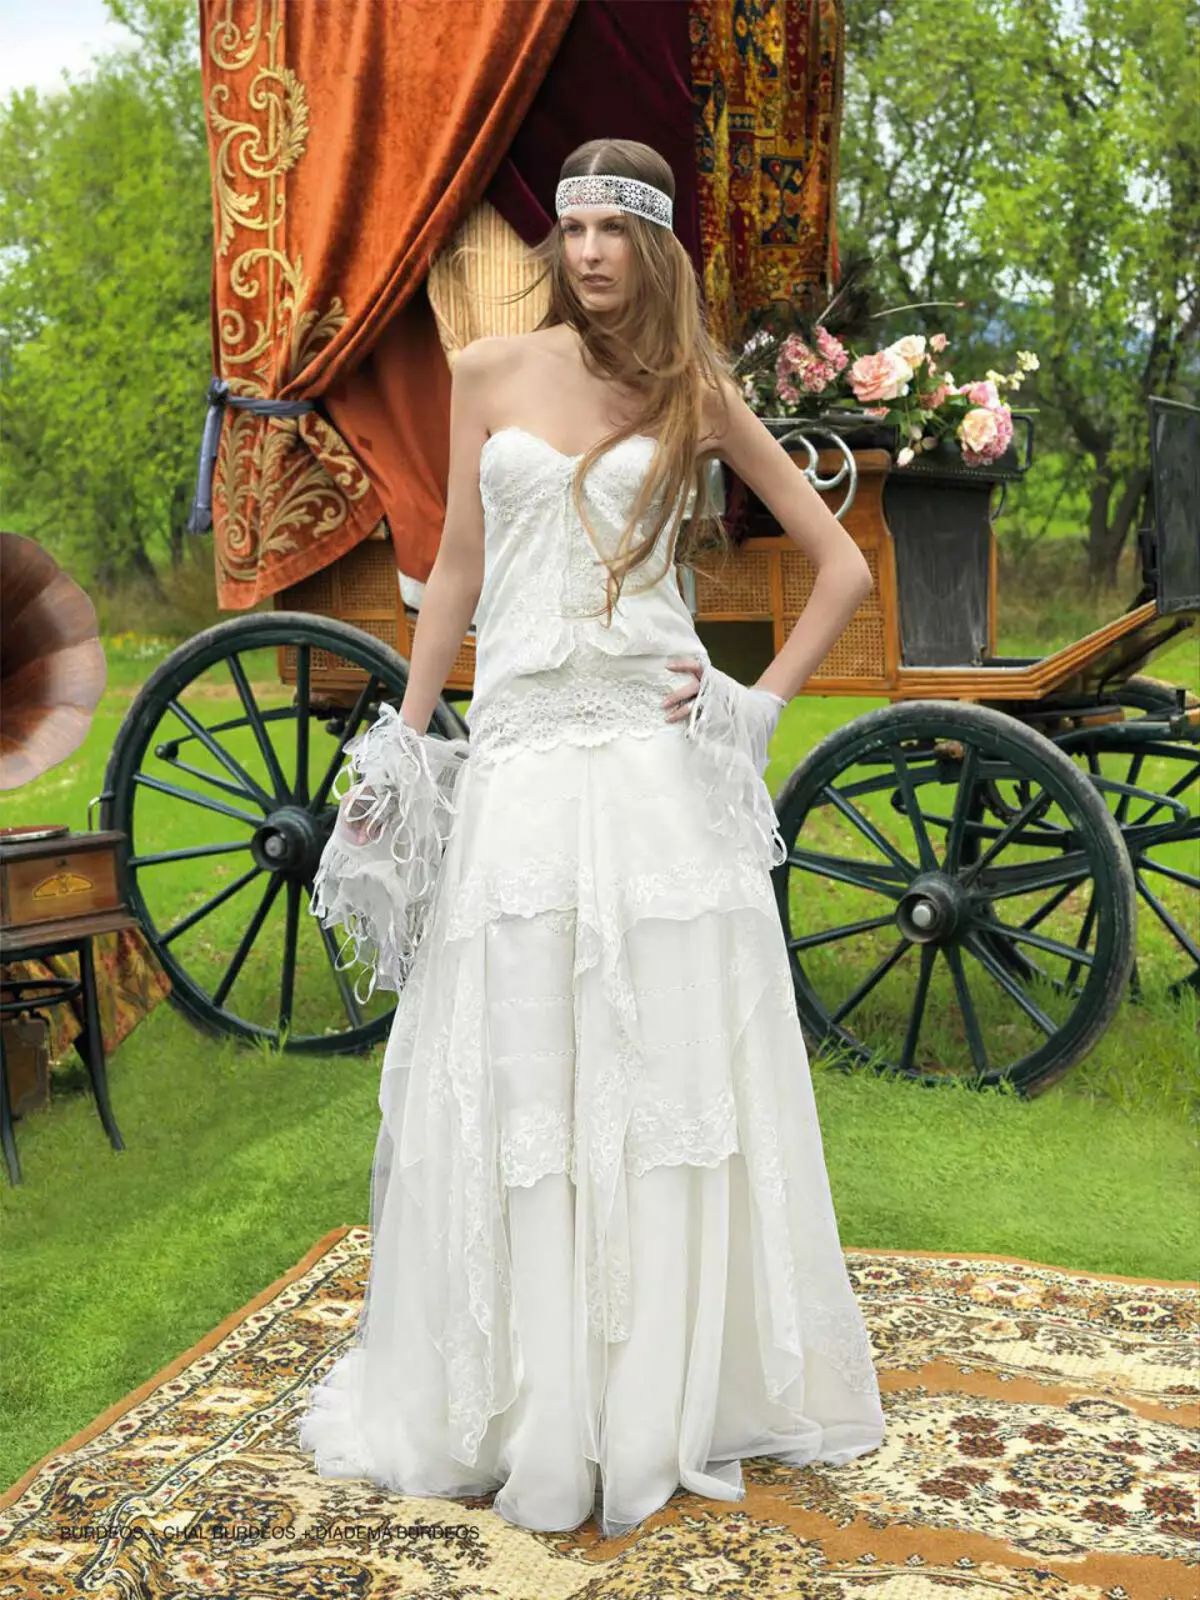 Booho को शैली मा विवाह पोशाक